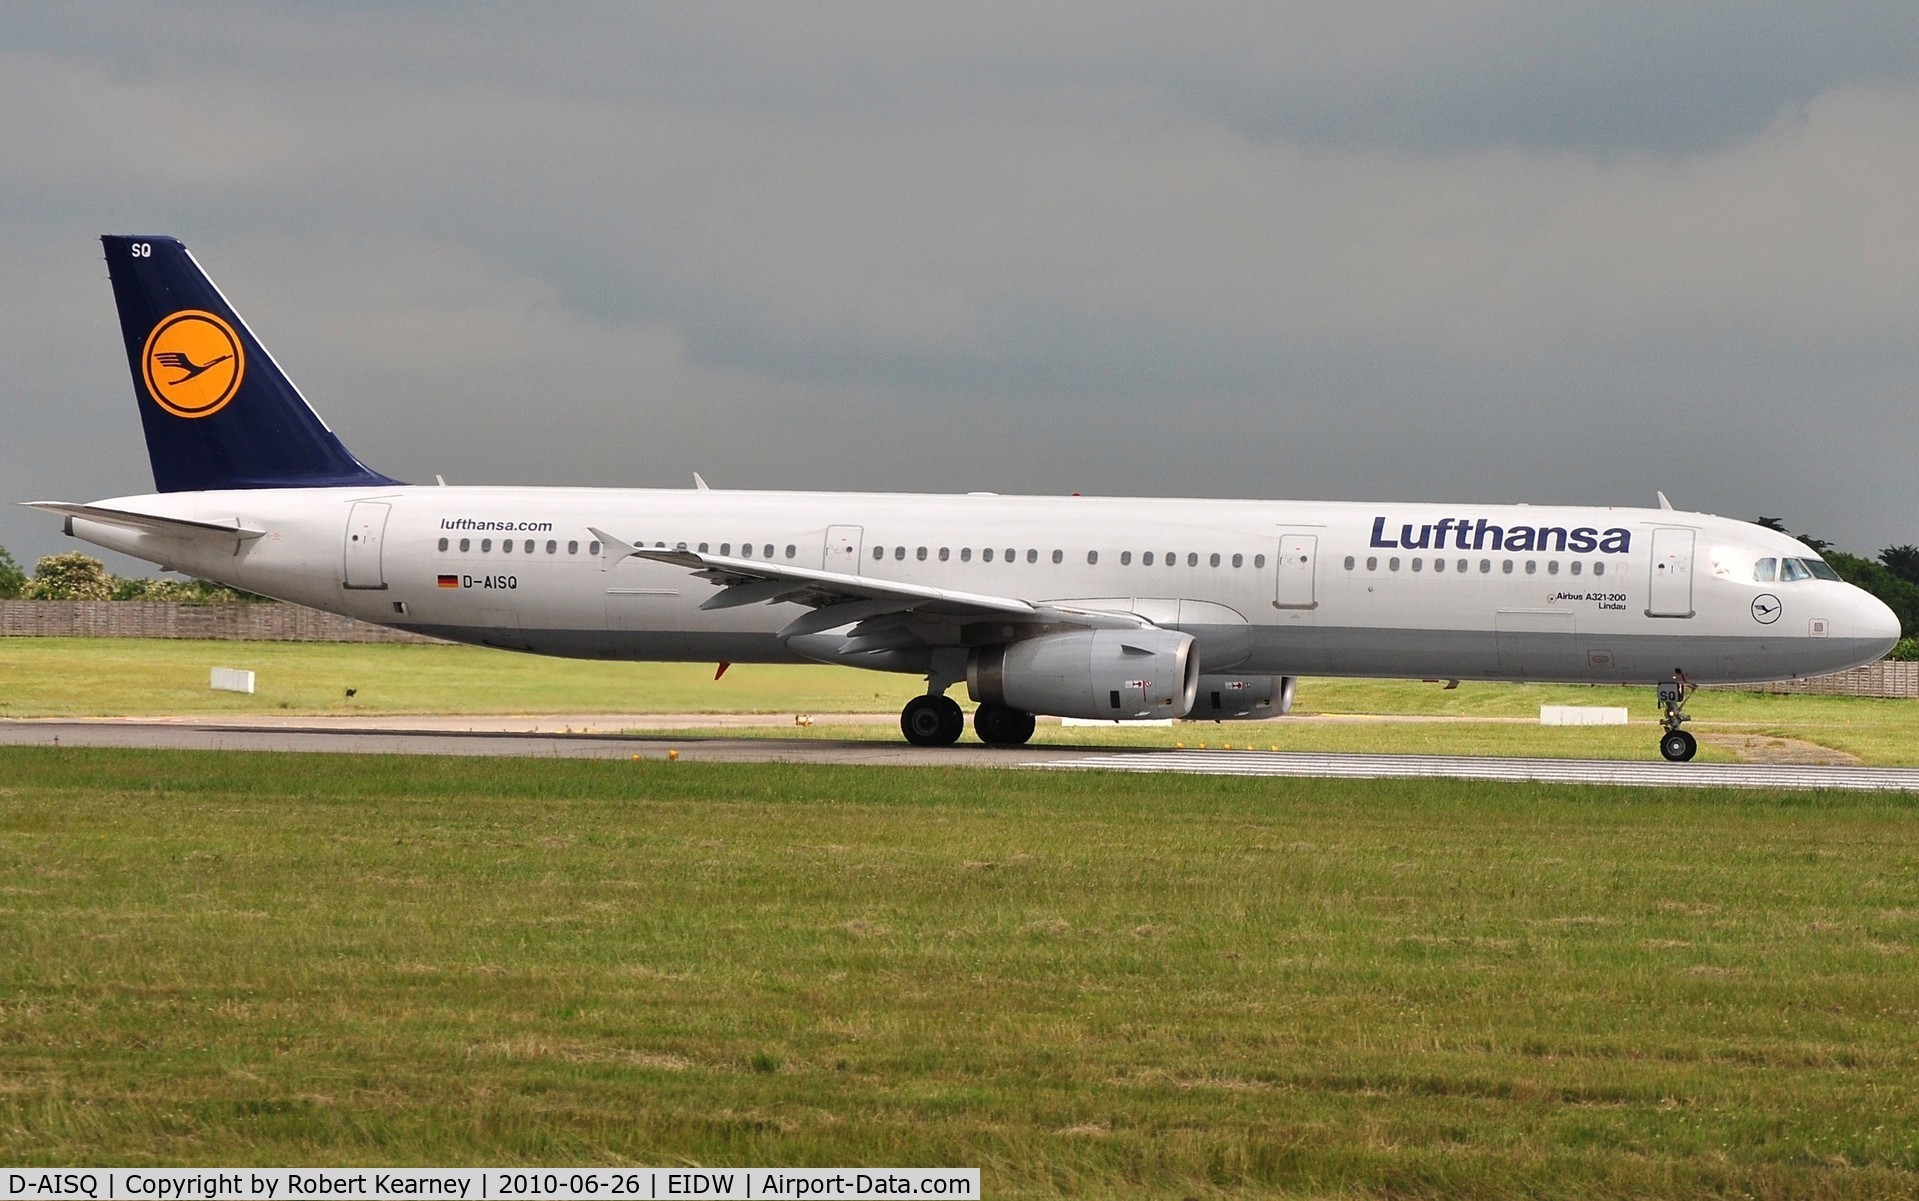 D-AISQ, 2009 Airbus A321-231 C/N 3936, Lufthansa preparing for take-off